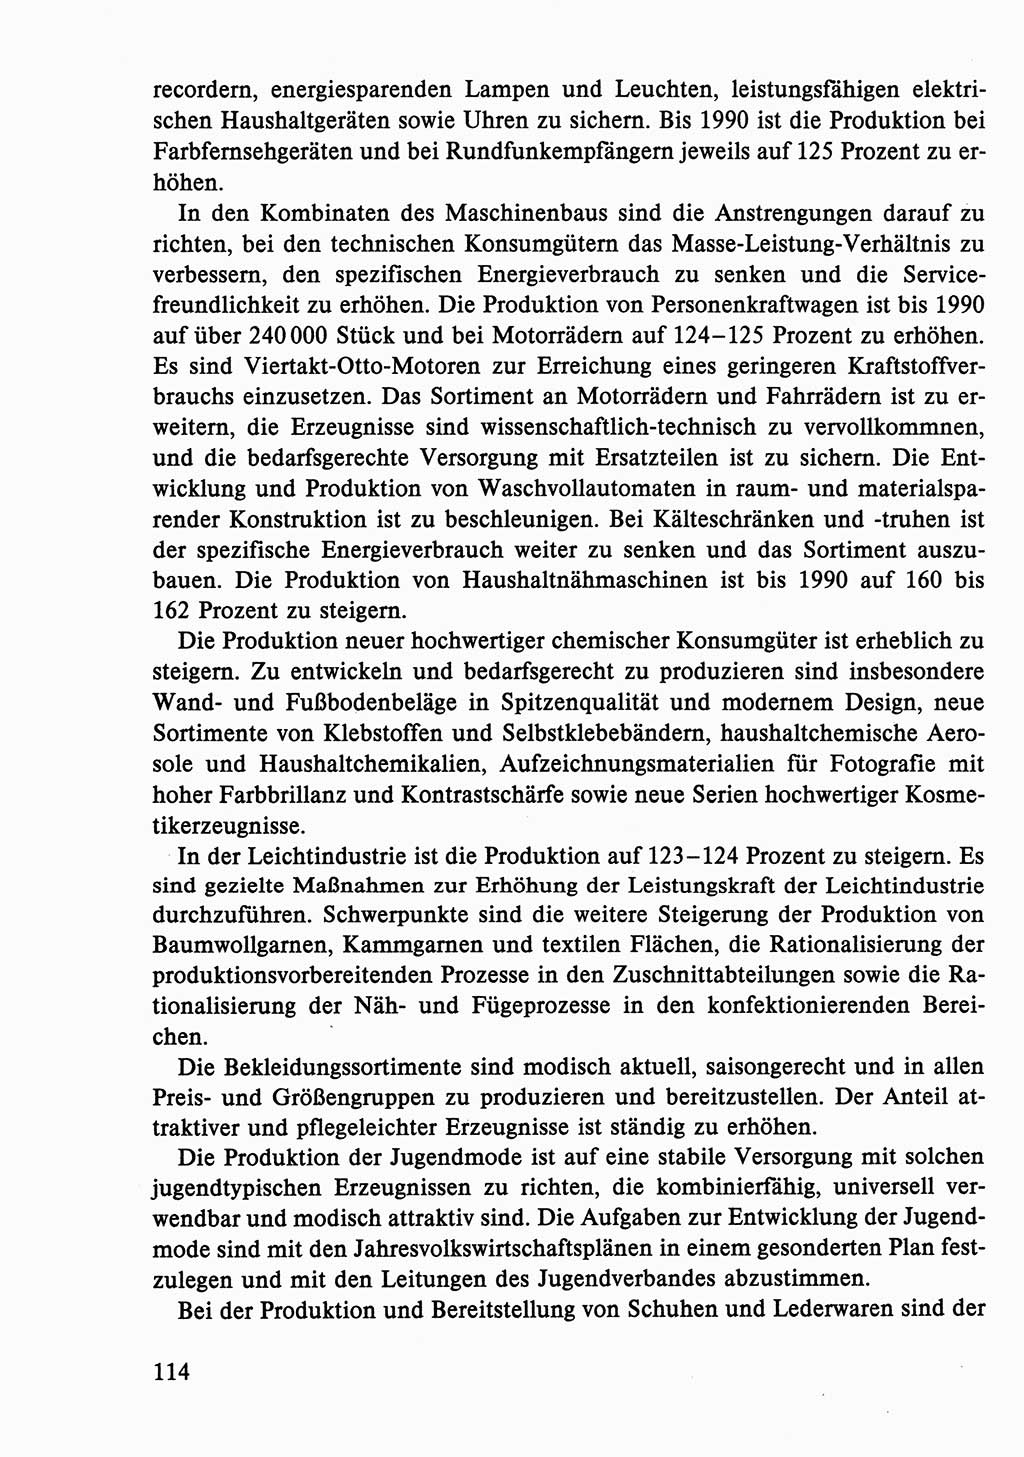 Dokumente der Sozialistischen Einheitspartei Deutschlands (SED) [Deutsche Demokratische Republik (DDR)] 1986-1987, Seite 114 (Dok. SED DDR 1986-1987, S. 114)